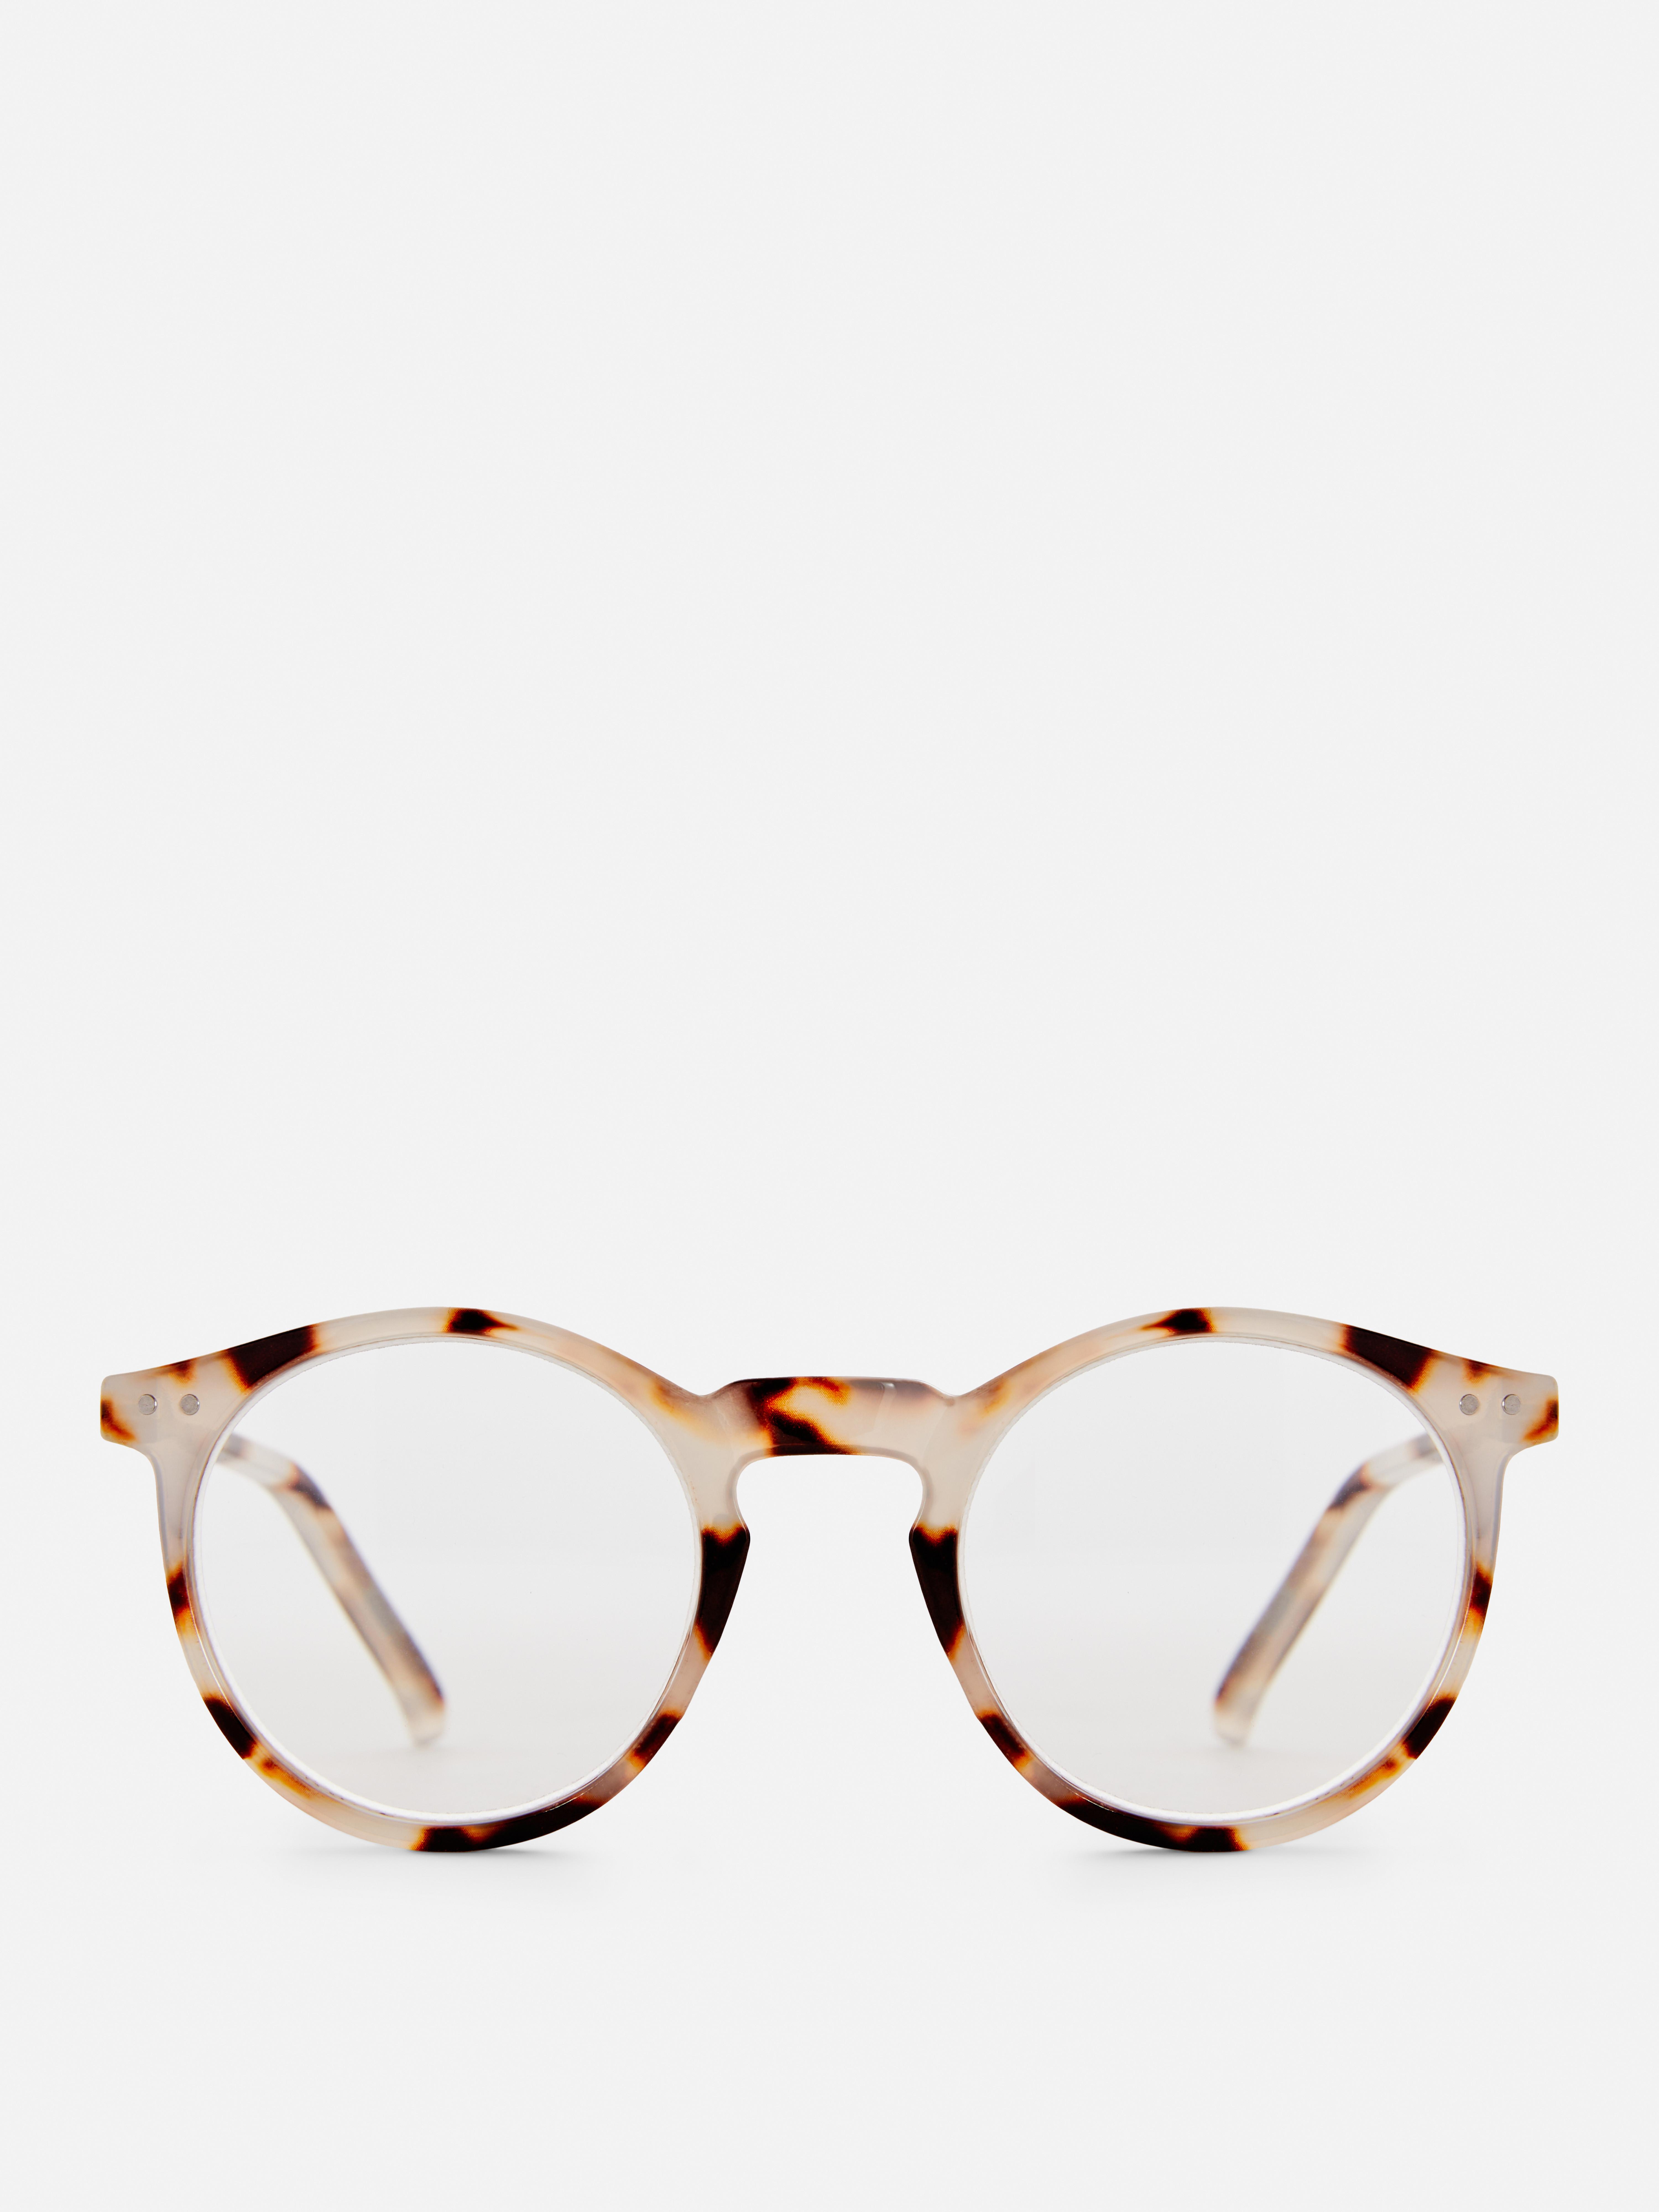 Round Reader Glasses